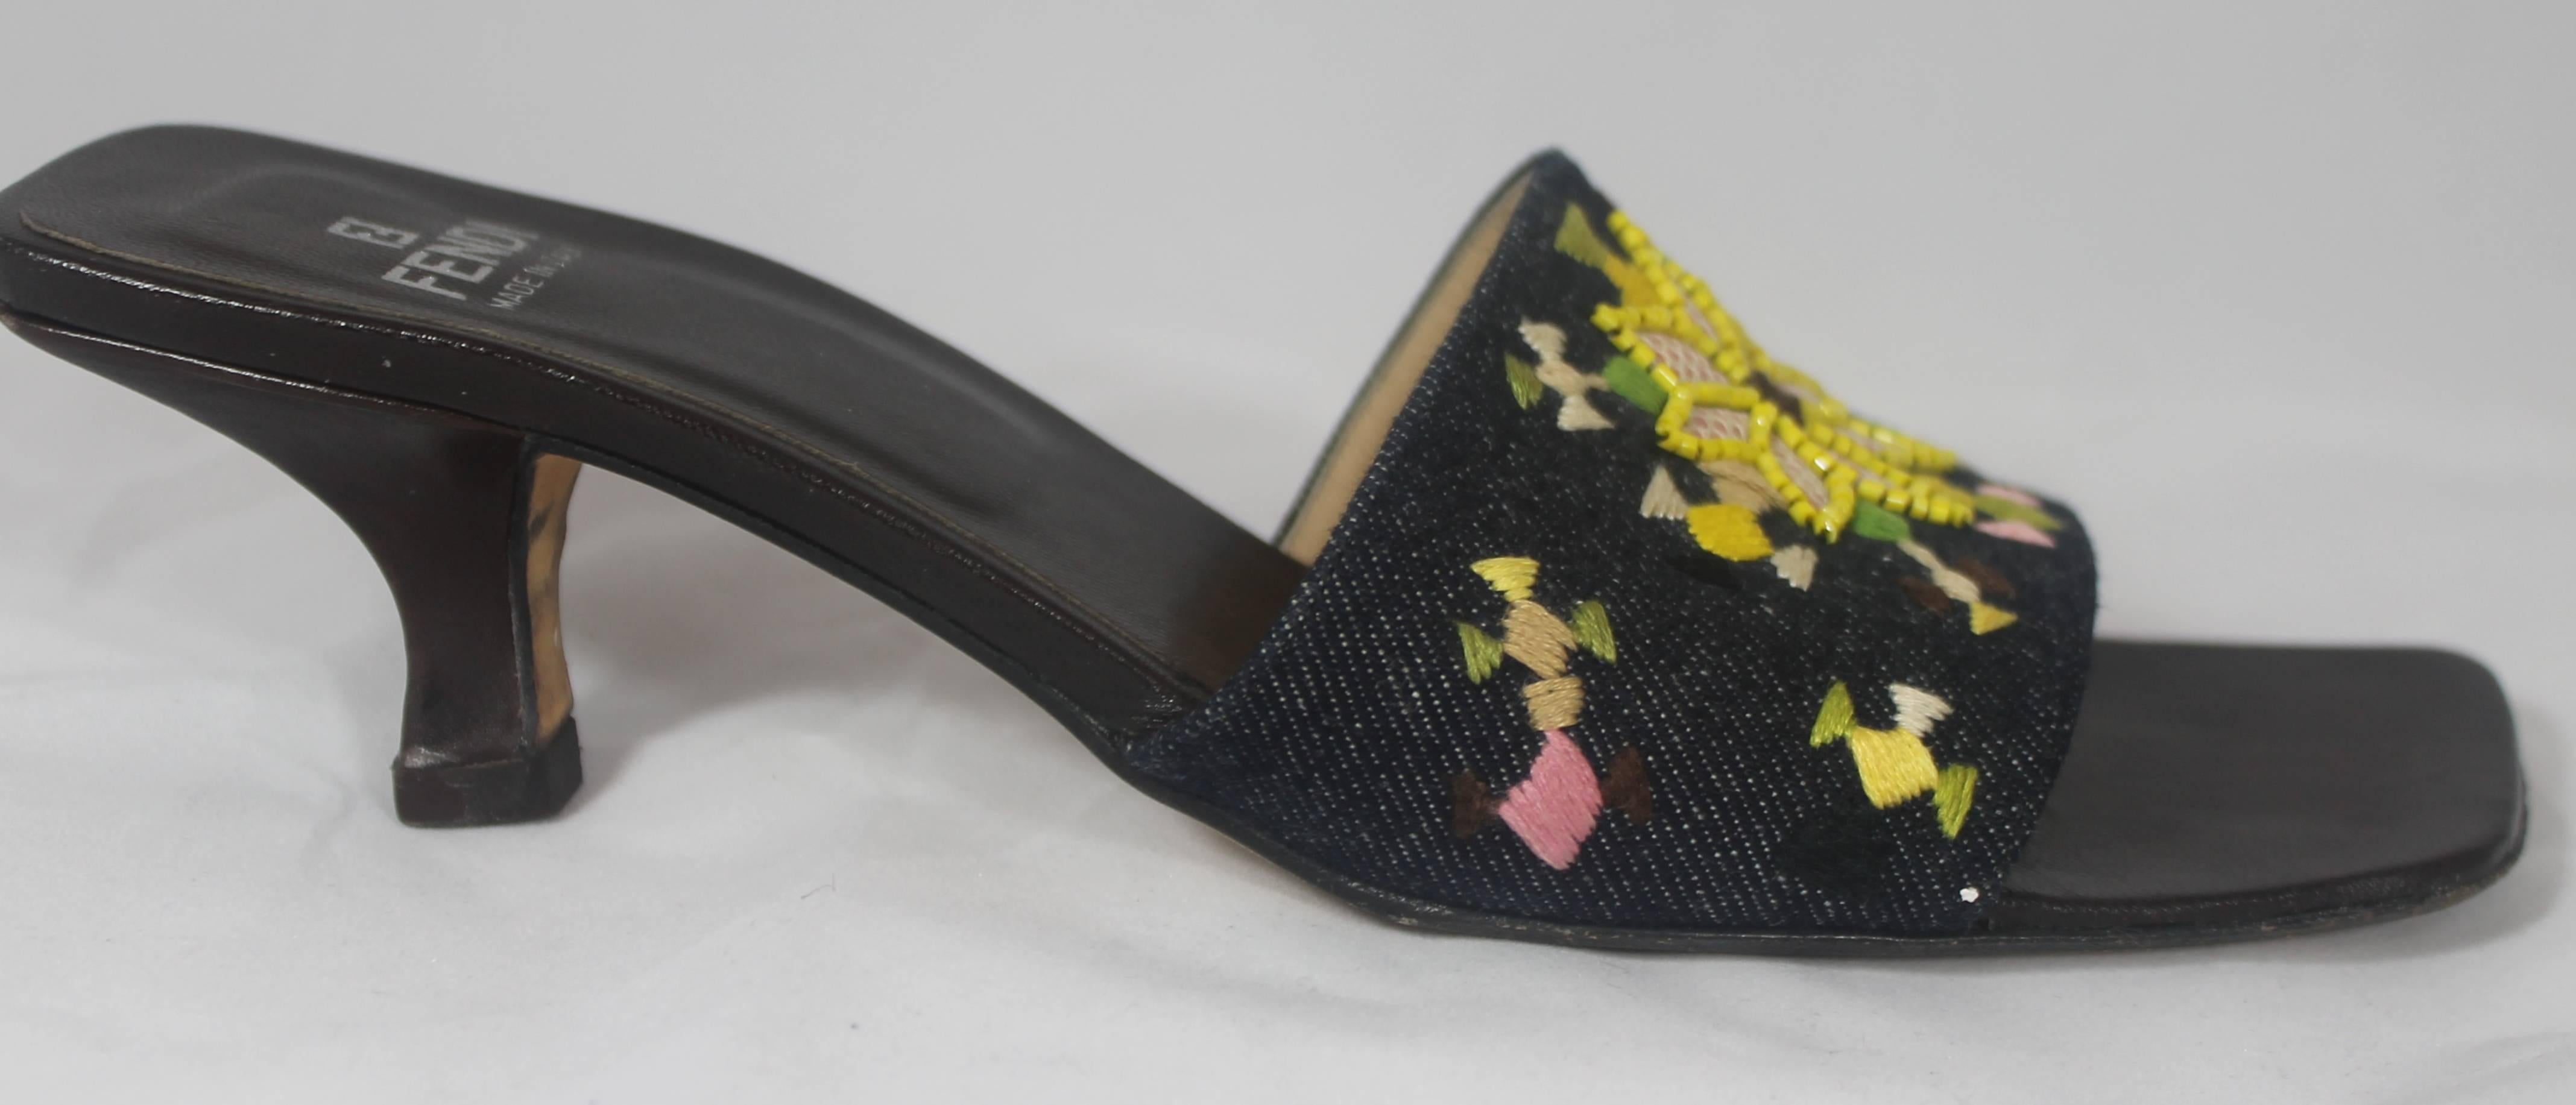 Diapositives en denim Fendi avec motif brodé et perlé multicolore - 7M. Ces chaussures ont un bout carré et une bande sur le dessus du pied. La bande est de couleur denim et comporte des motifs multicolores ainsi que des perles jaunes. Elles sont en